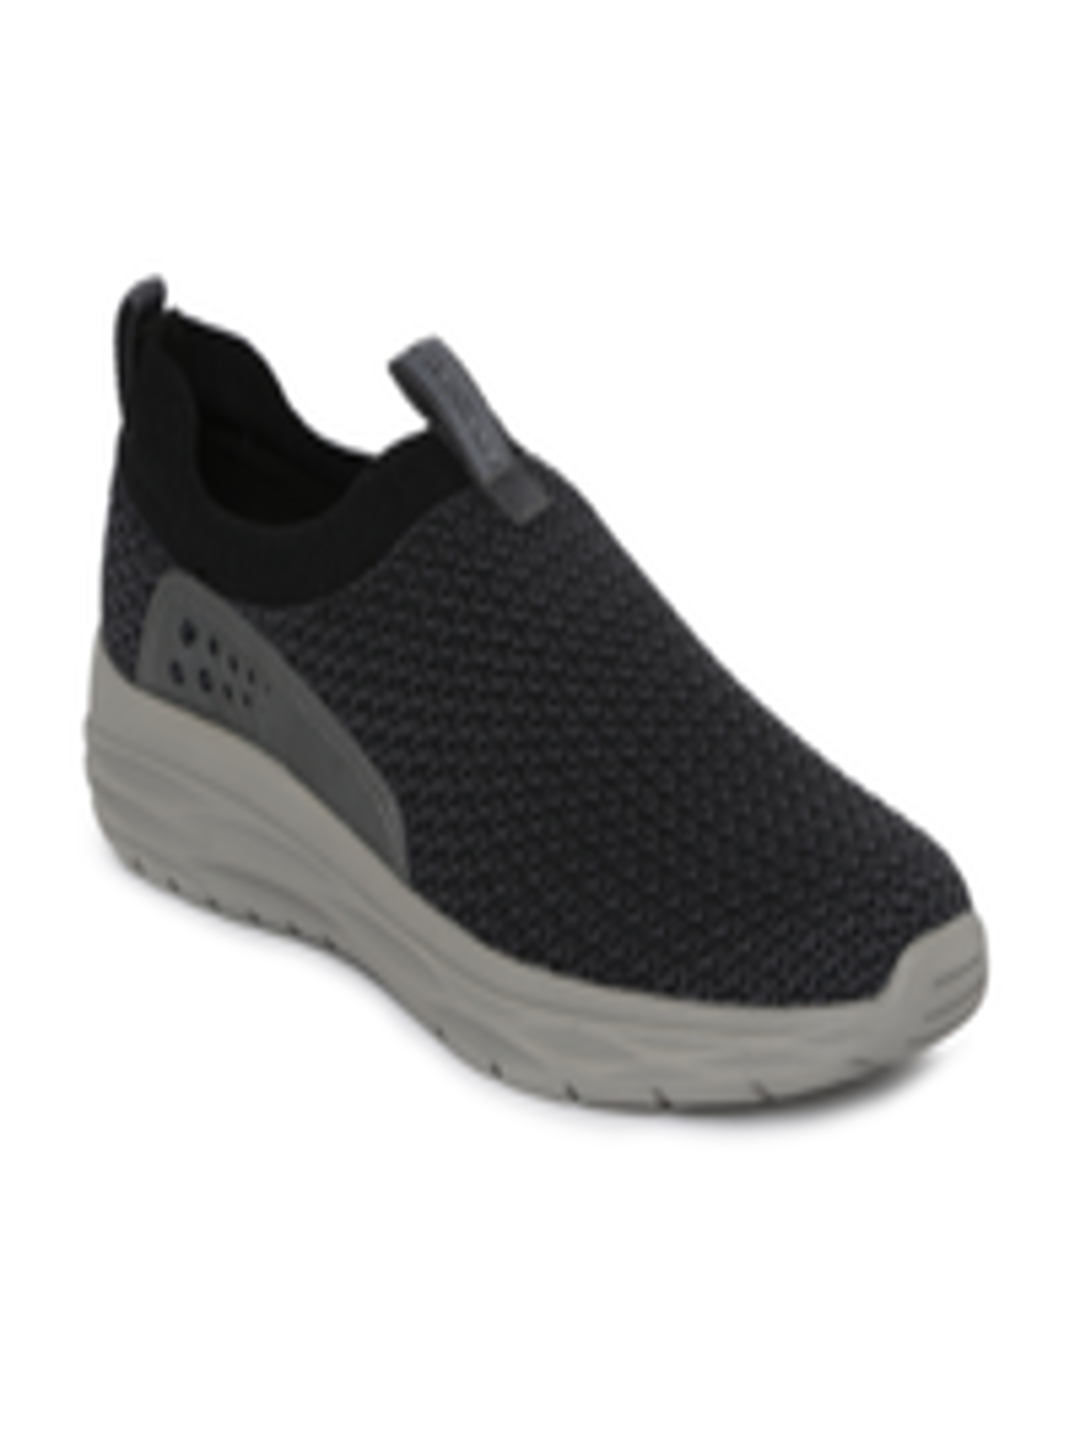 Buy Skechers Men Black HARSEN RENEGO Sneakers - Casual Shoes for Men ...